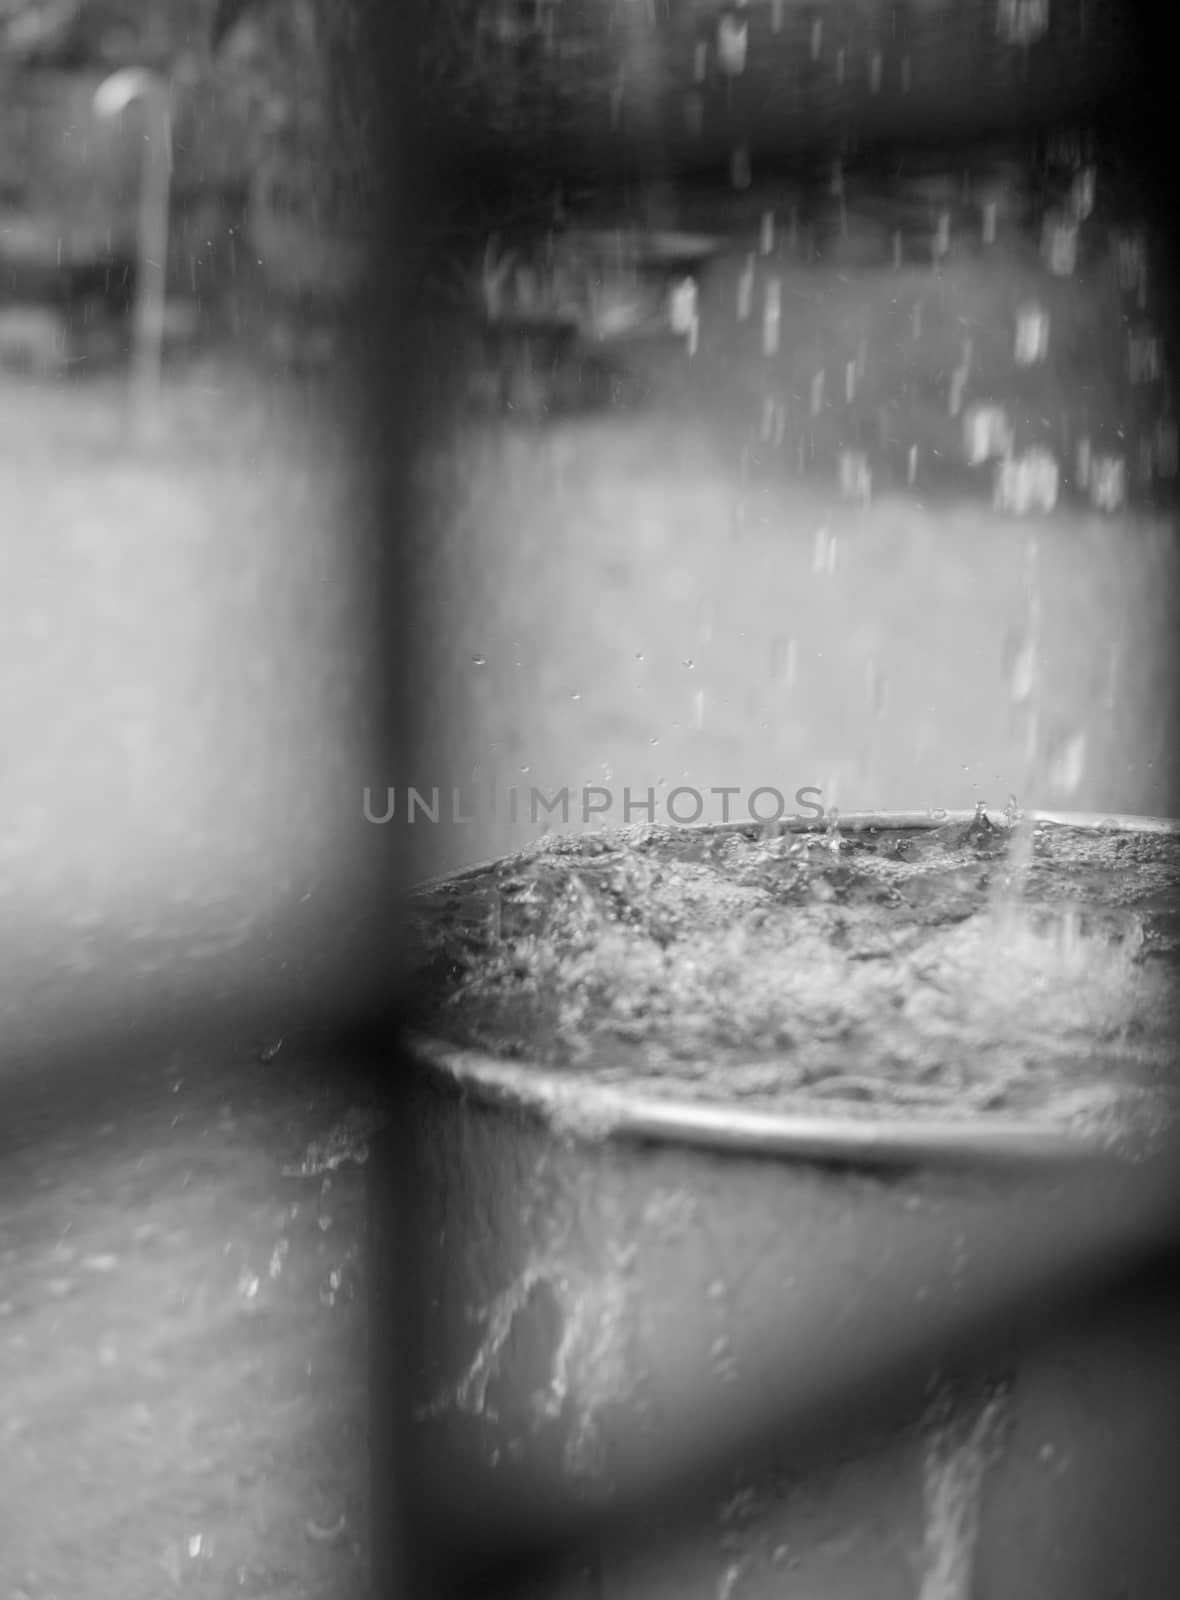 RAIN DROPS FALLING INTO STEEL TANK by PrettyTG